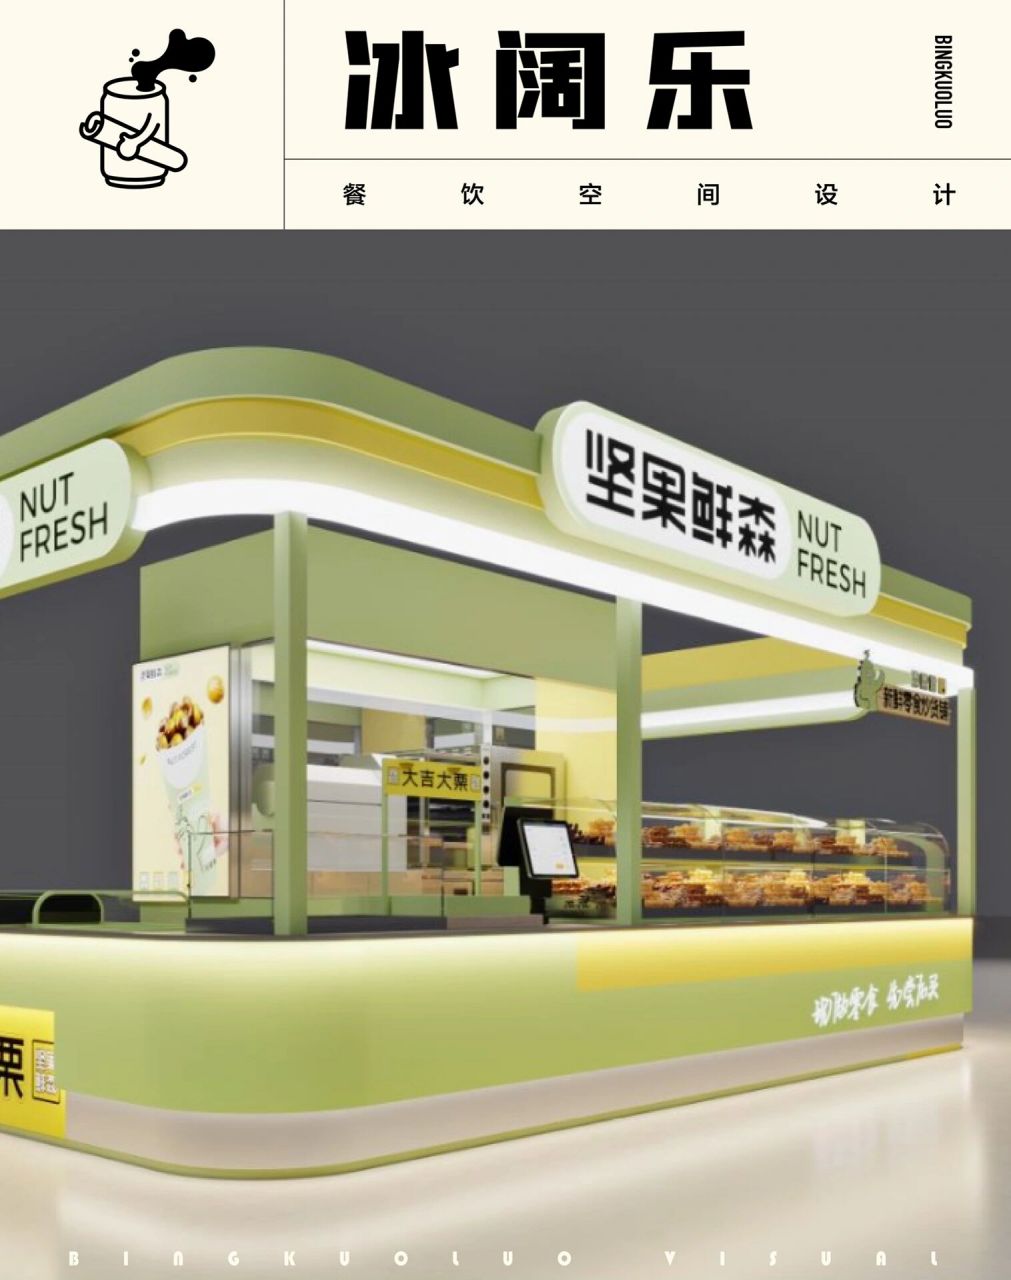 好在有设计72大吉大栗的炒货铺  中岛店是坚果鲜森新鲜零食店的一家